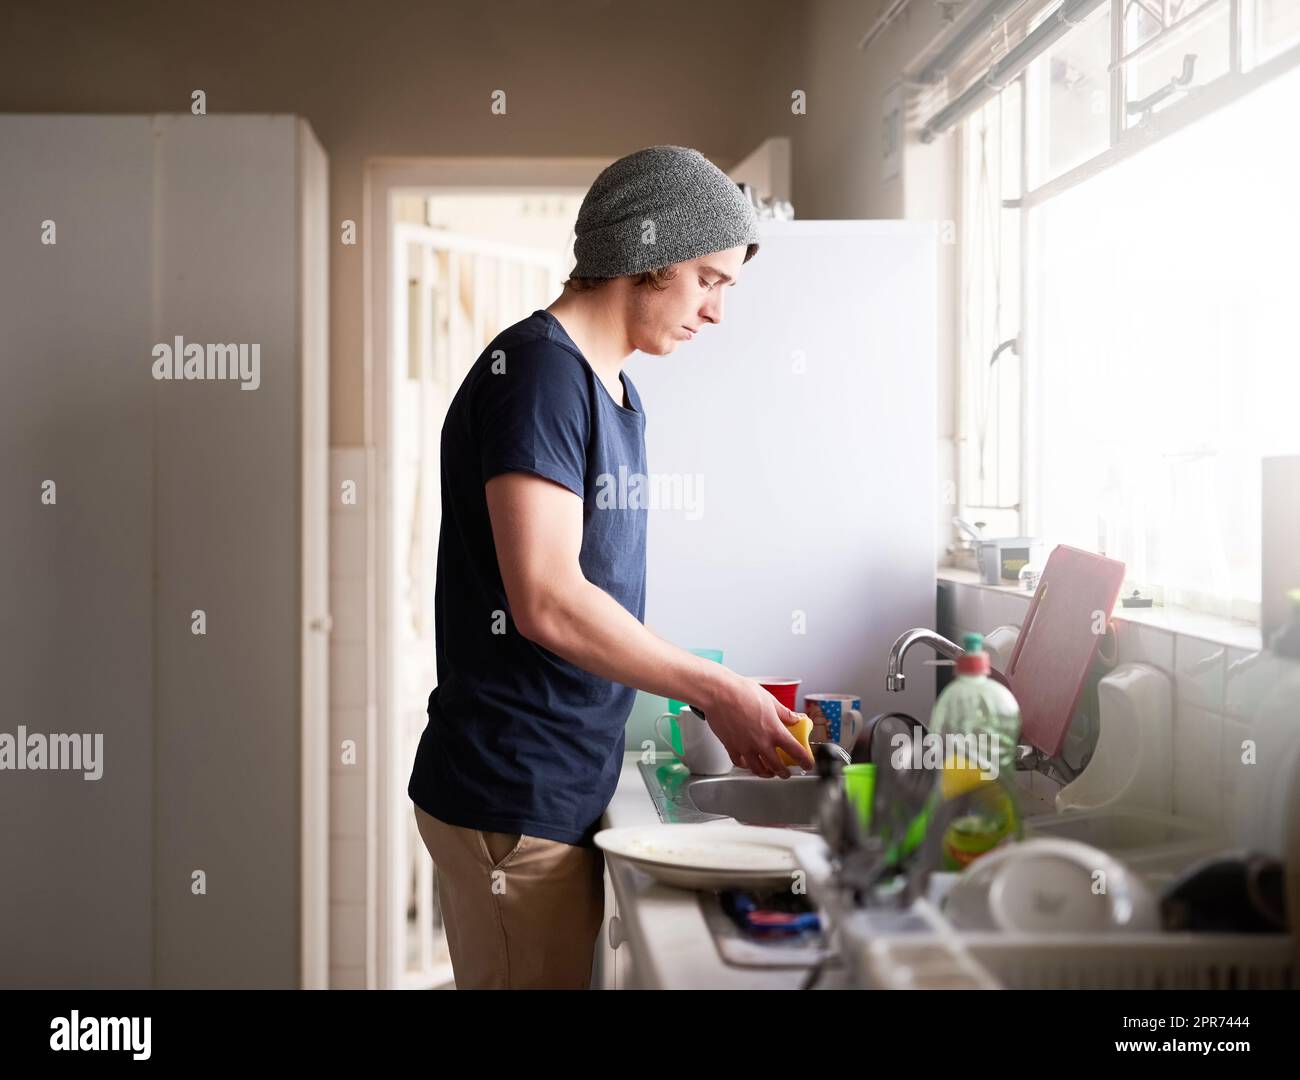 Seine Küche sauber halten. Eine kurze Aufnahme eines jungen Mannes, der zu Hause die Gerichte macht. Stockfoto